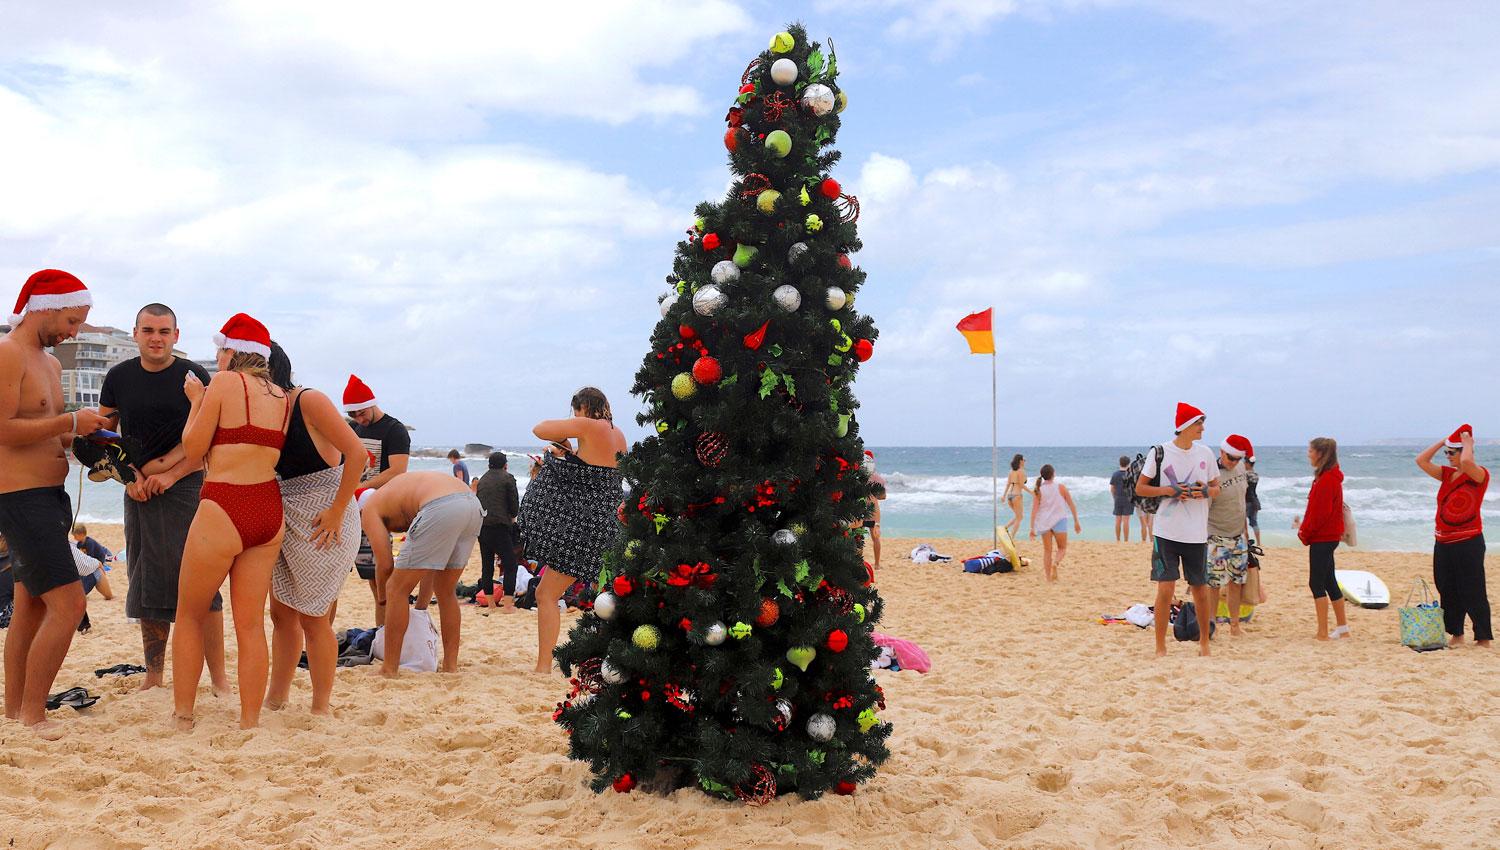 CON CALOR. En Sydney, Australia, muchas personas aprovecharon el buen clima para disfrutar de una Navidad en la playa. REUTERS